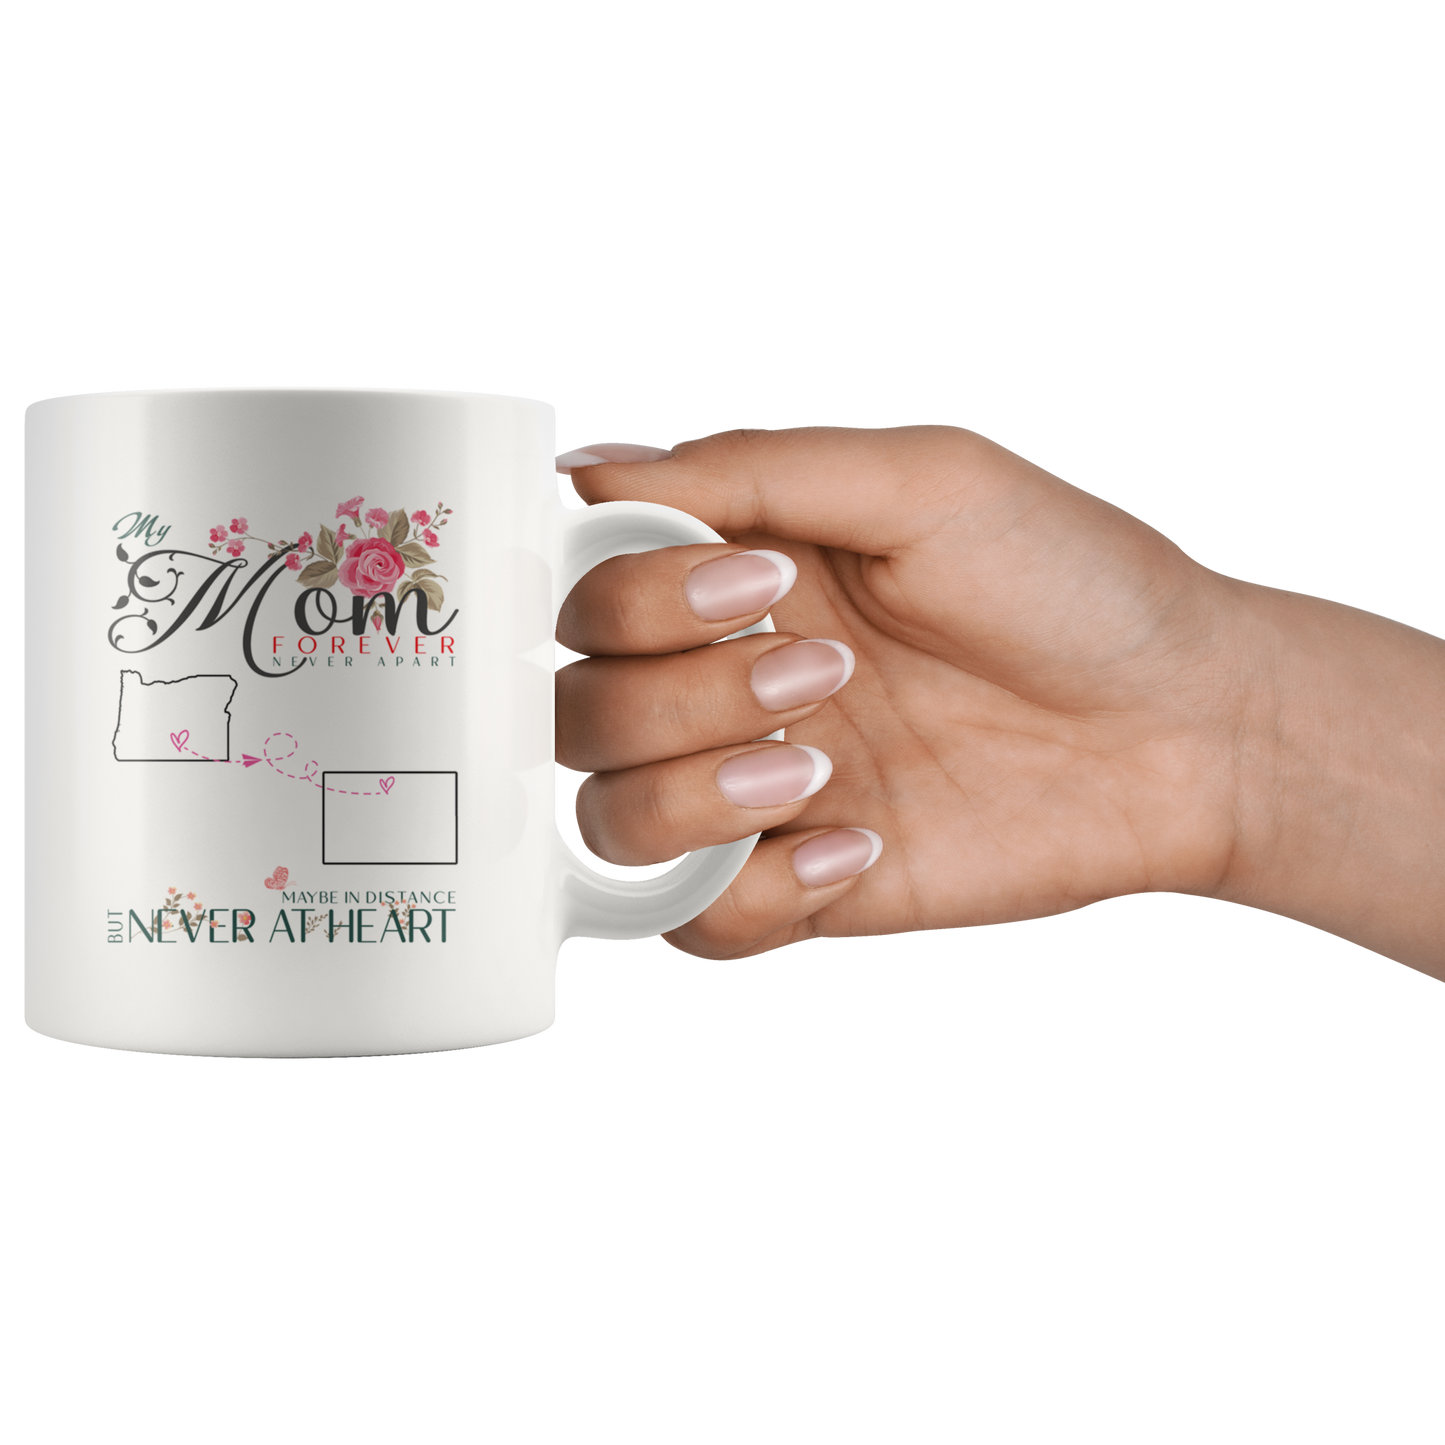 M-20321571-sp-25829 - [ Oregon | Colorado ] (mug_11oz_white) Personalized Mothers Day Coffee Mug - My Mom Forever Never A